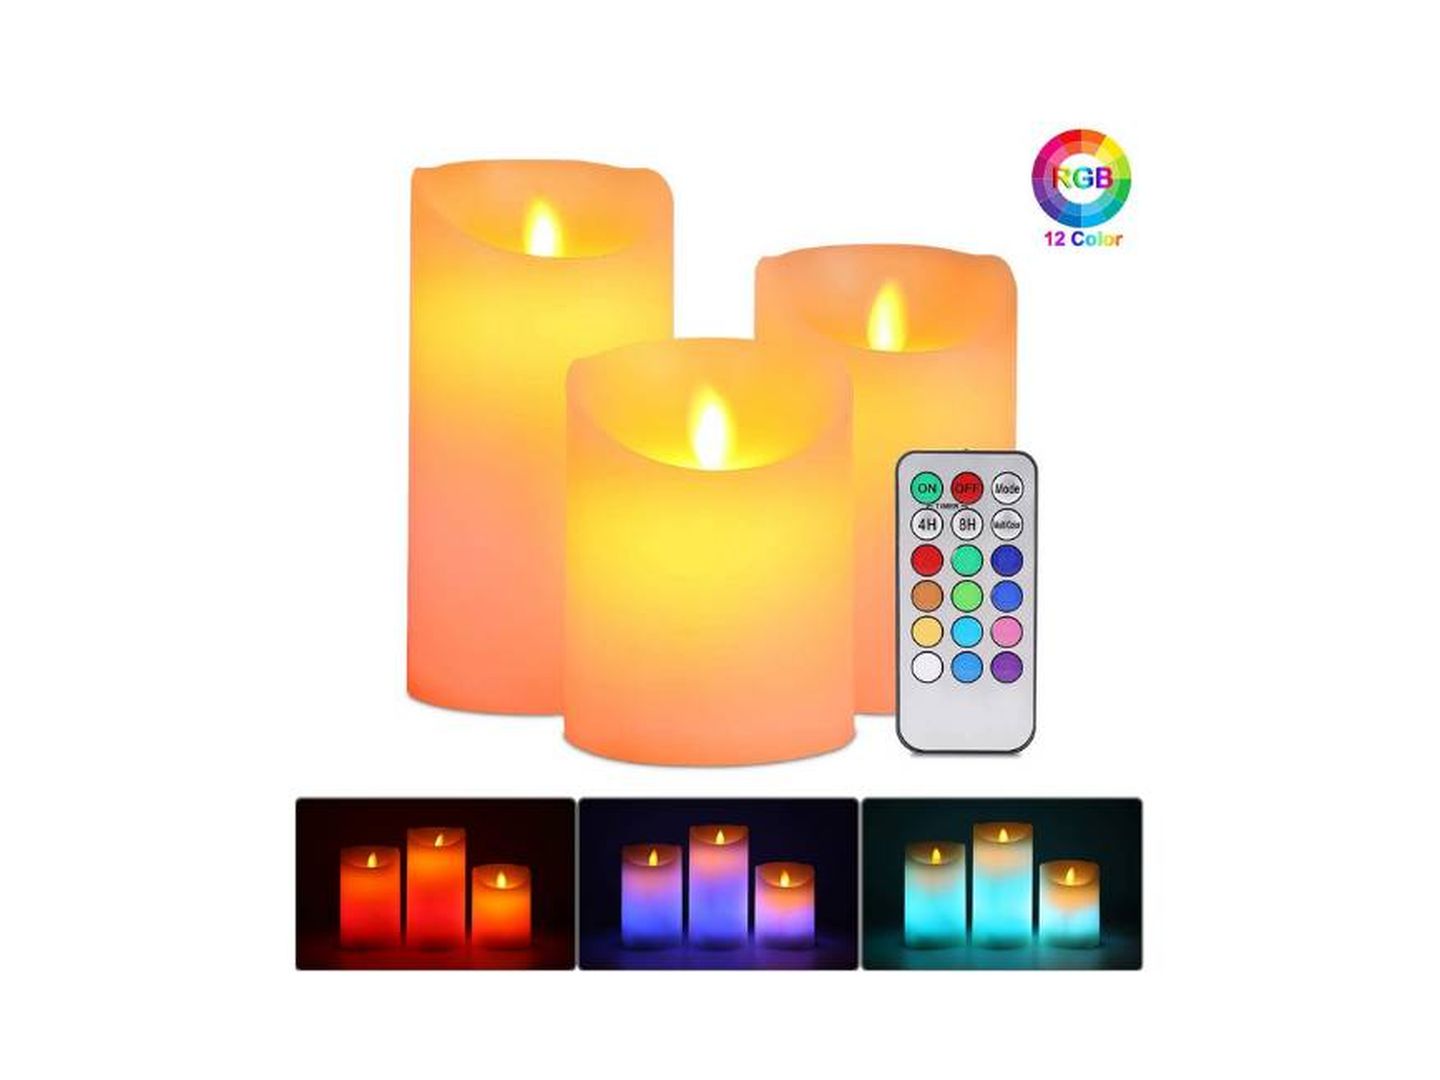 Las velas aromáticas y sus múltiples aplicaciones prácticas - Amaretta Home  Blog